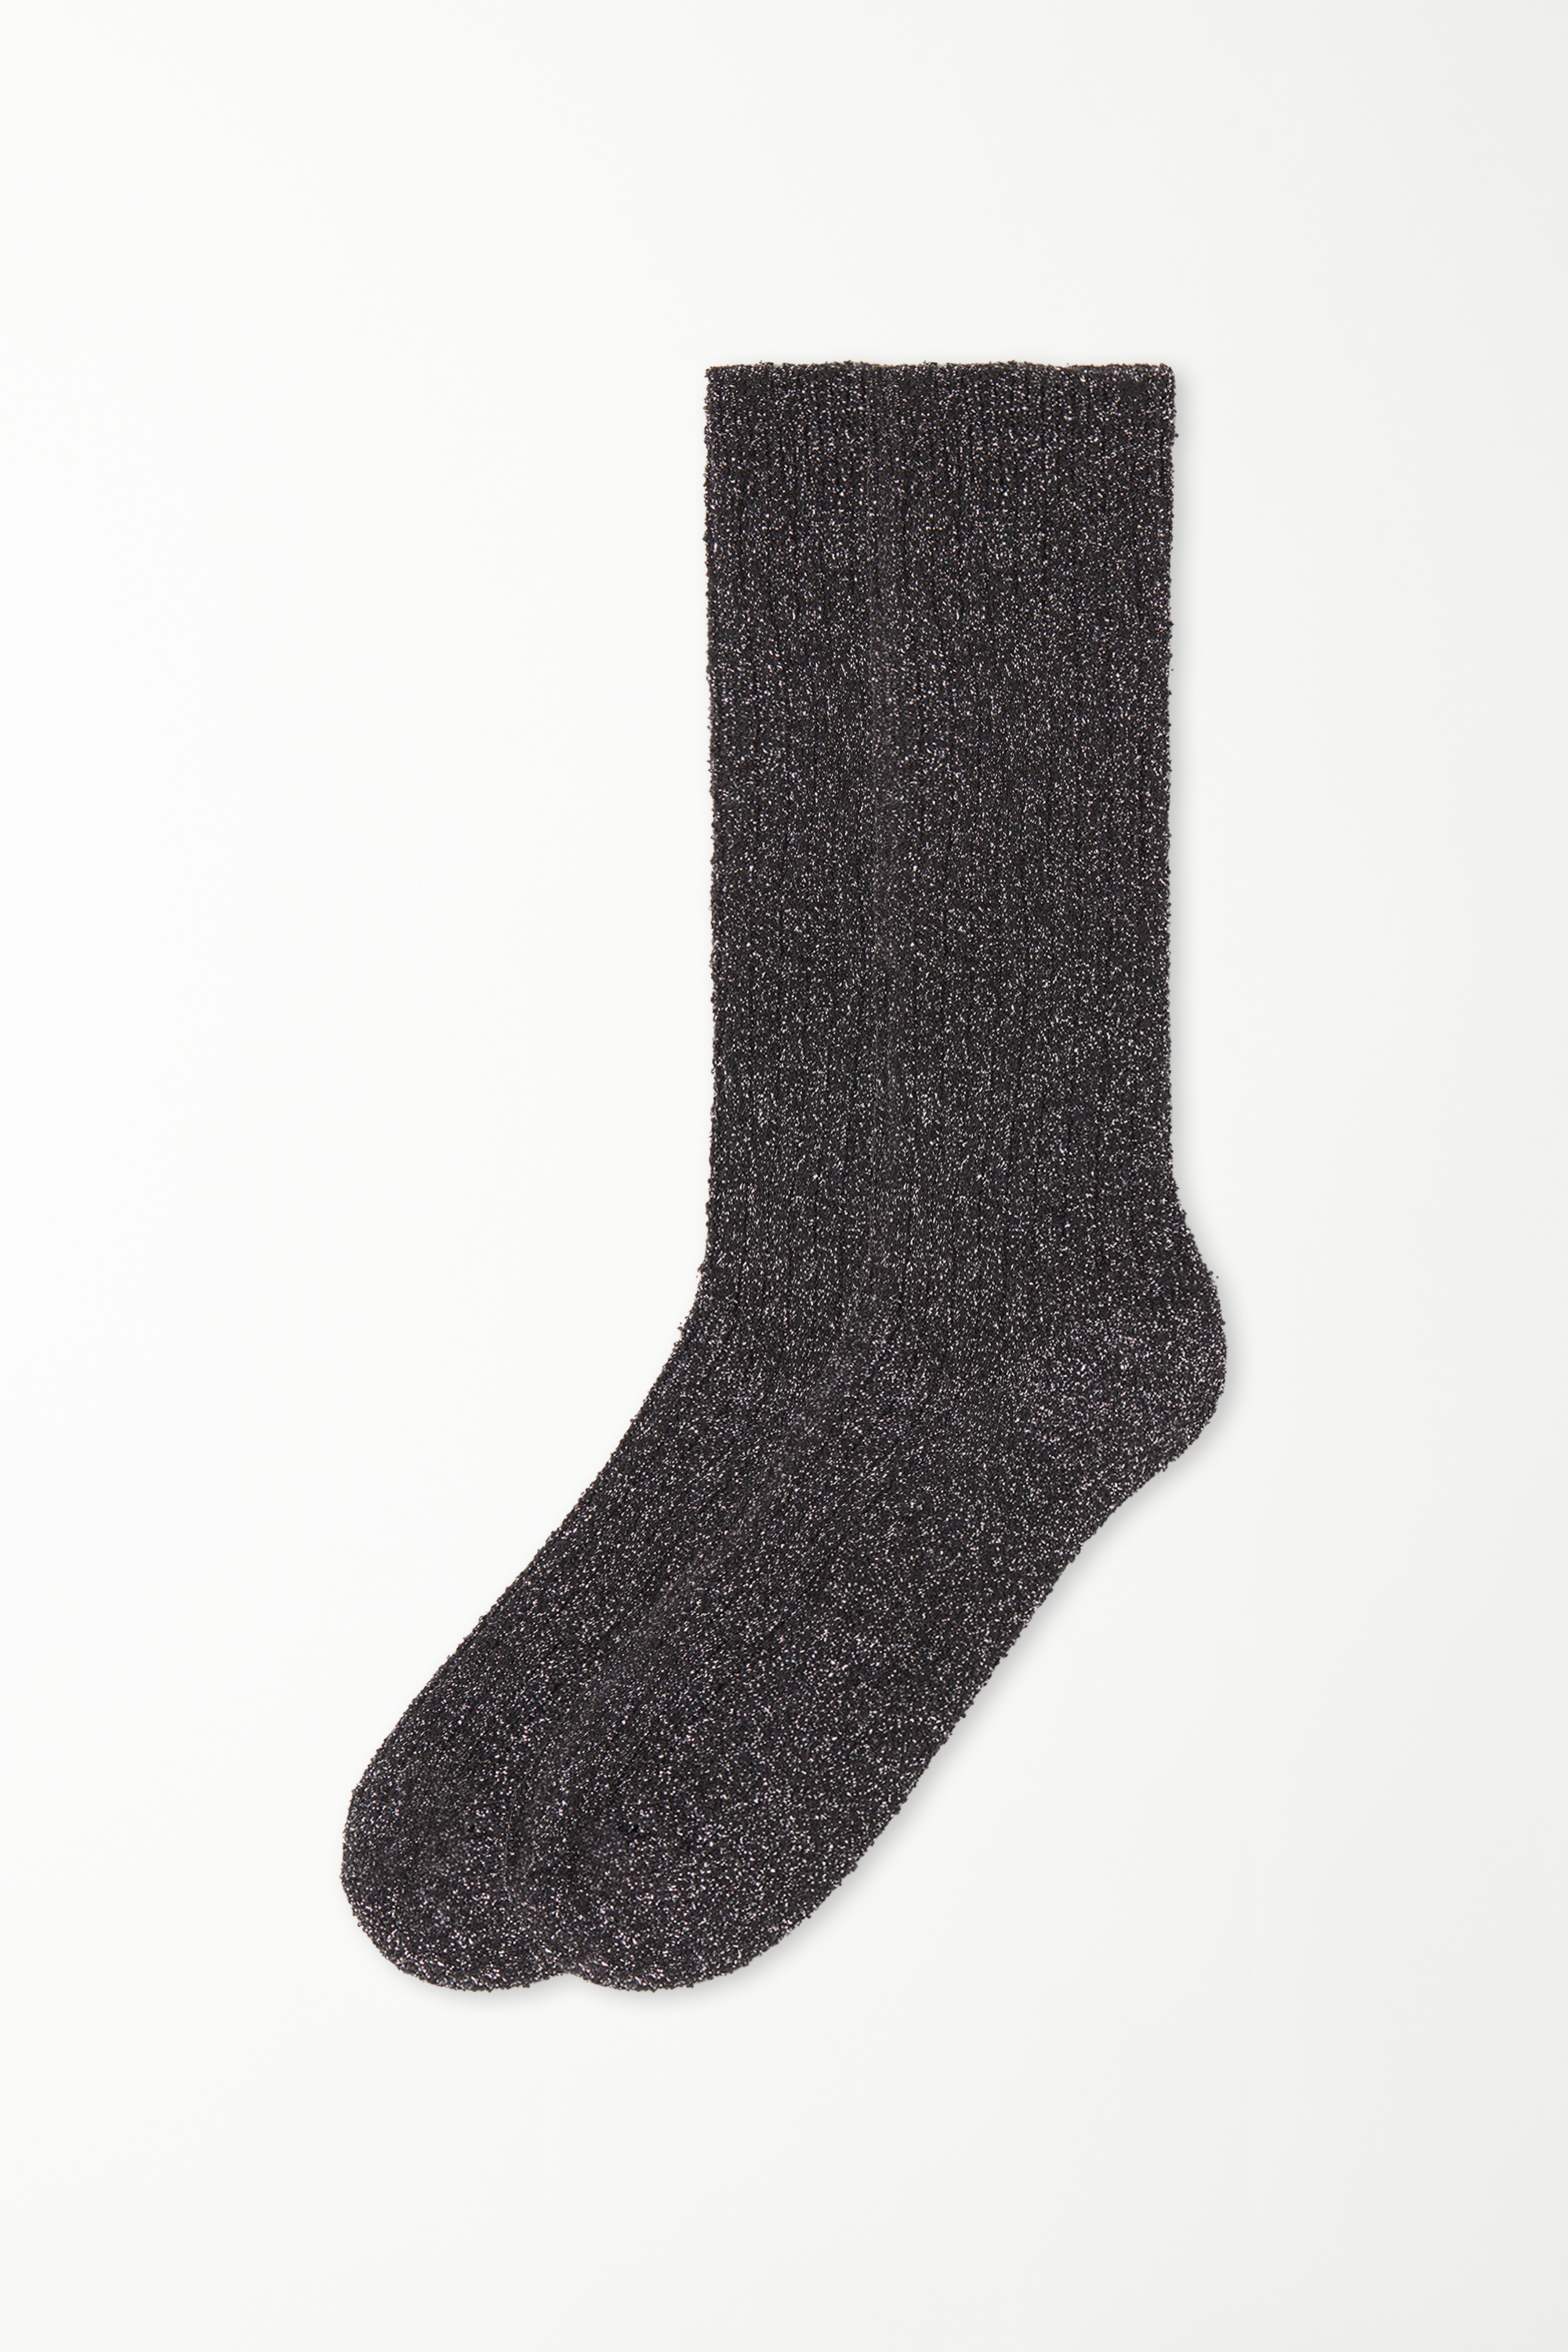 3/4 Length Thick Laminated Ribbed Socks